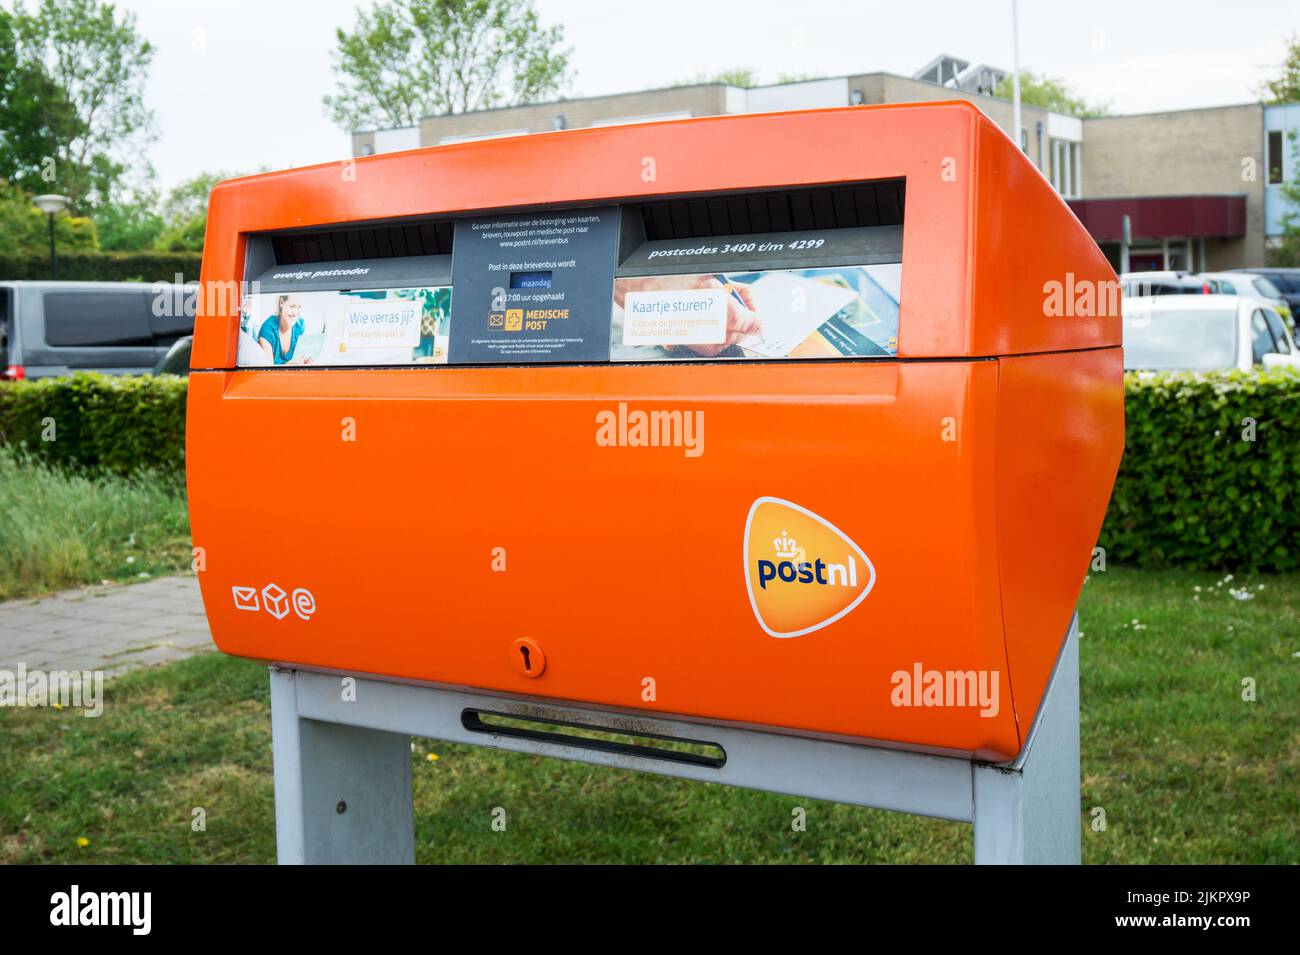 Boîte postale orange PostNL avec logo. Société néerlandaise de services postaux Letterbox. Hertogenbosch, pays-Bas - 7 mai 2022. Banque D'Images